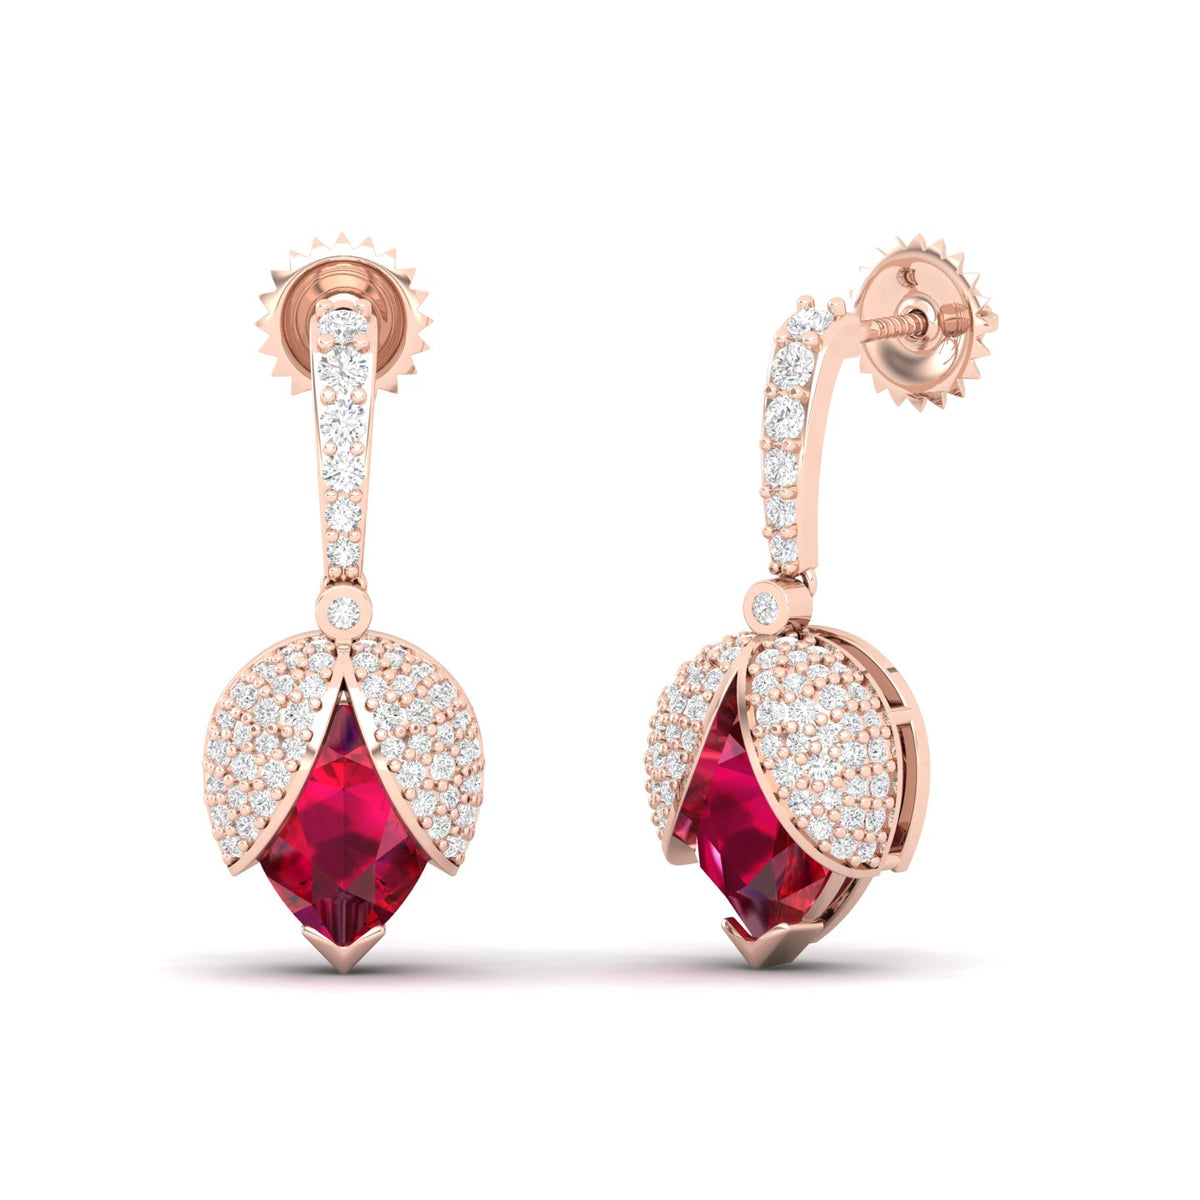 Maurya Beetle Ruby Push Back Earrings with Diamonds